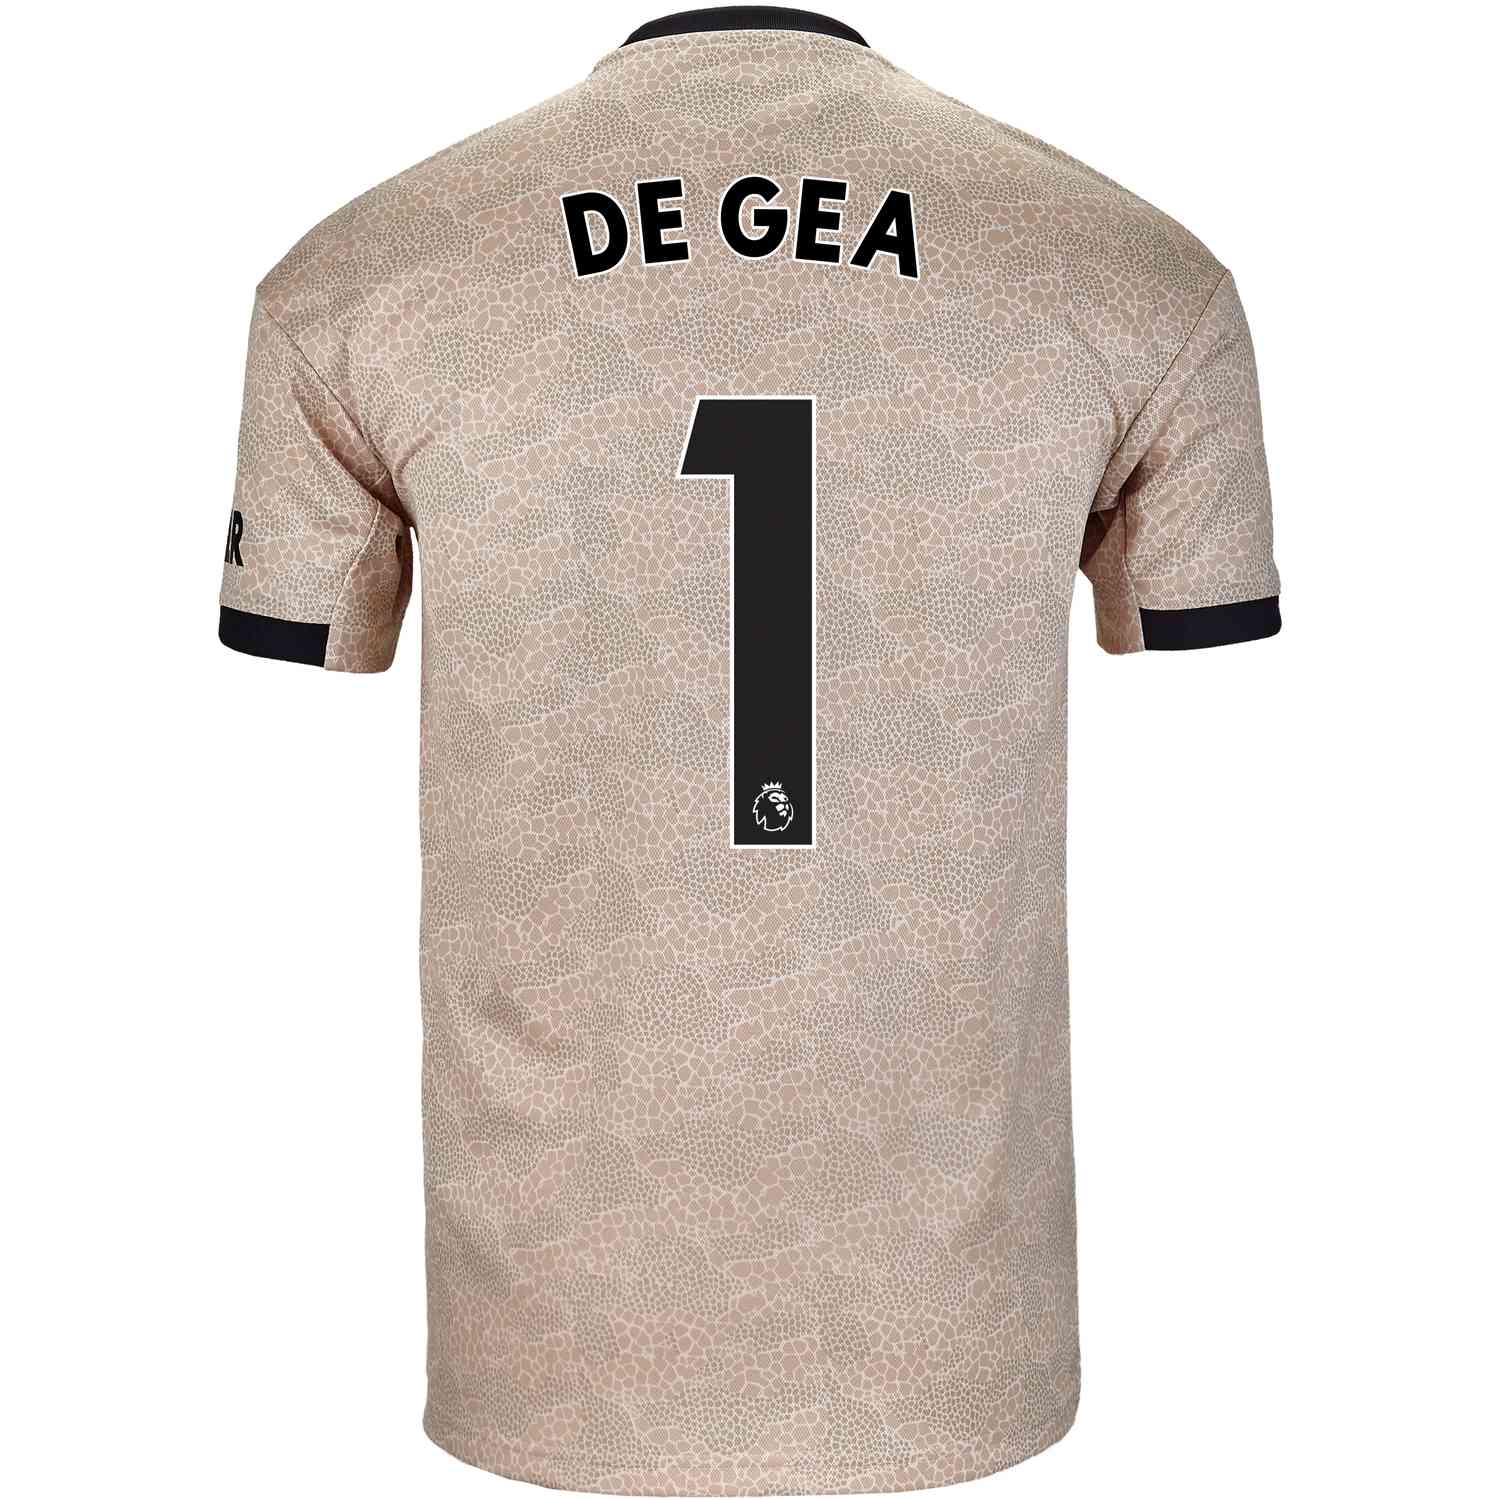 2019/20 adidas David de Gea Manchester United Away Jersey - SoccerPro